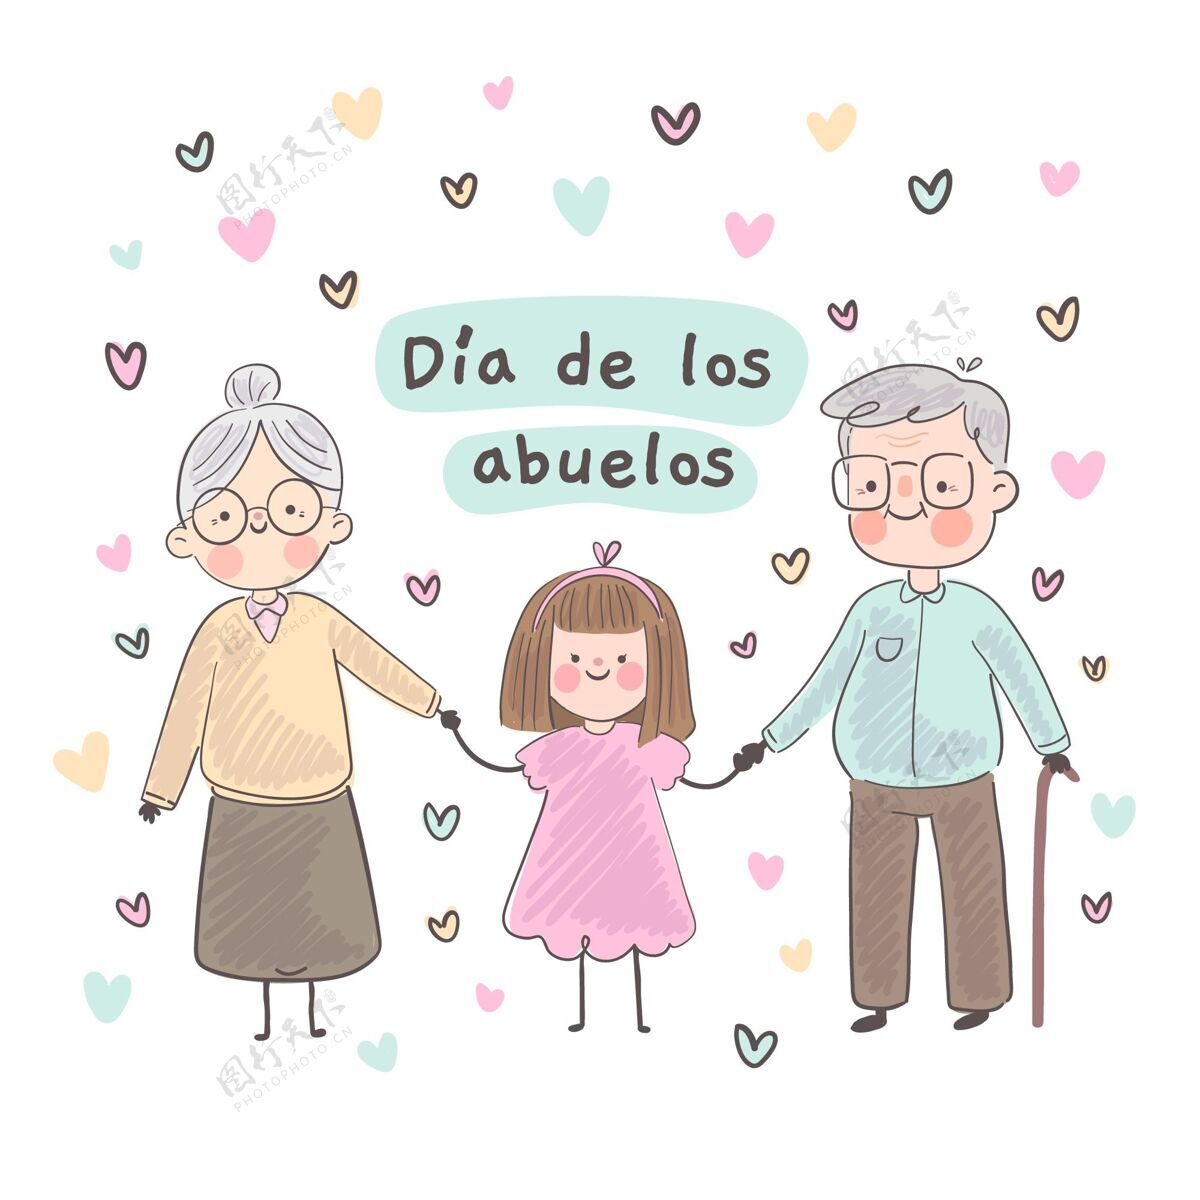 祖母手绘diadelosabuelos插图节日祖父母家庭